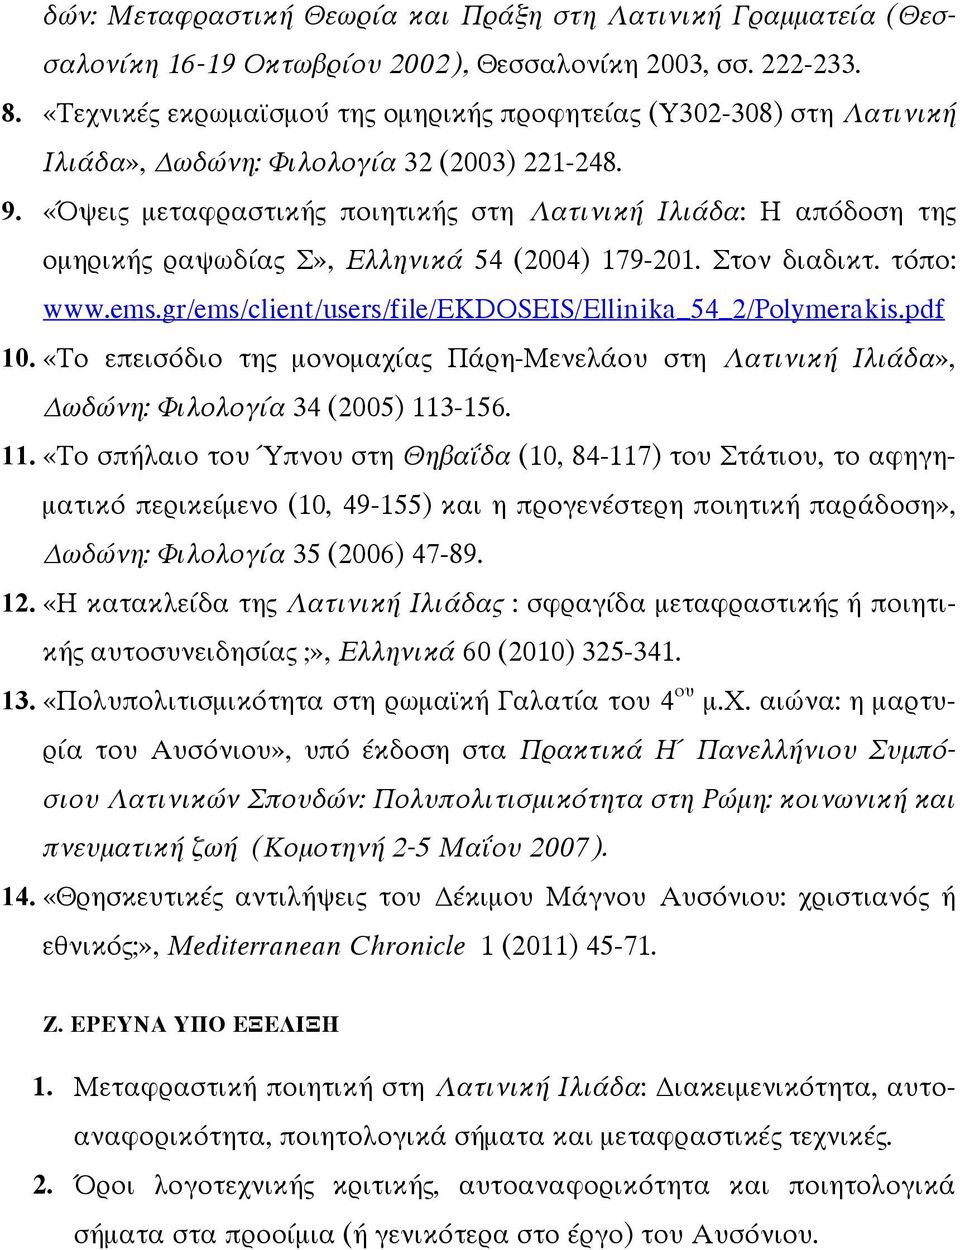 «Όψει µεταφραστική ποιητική στη Λατινική Ιλιάδα: Η απόδοση τη οµηρική ραψωδία Σ», Ελληνικά 54 (2004) 179-201. Στον διαδικτ. τόπο: www.ems.gr/ems/client/users/file/ekdoseis/ellinika_54_2/polymerakis.